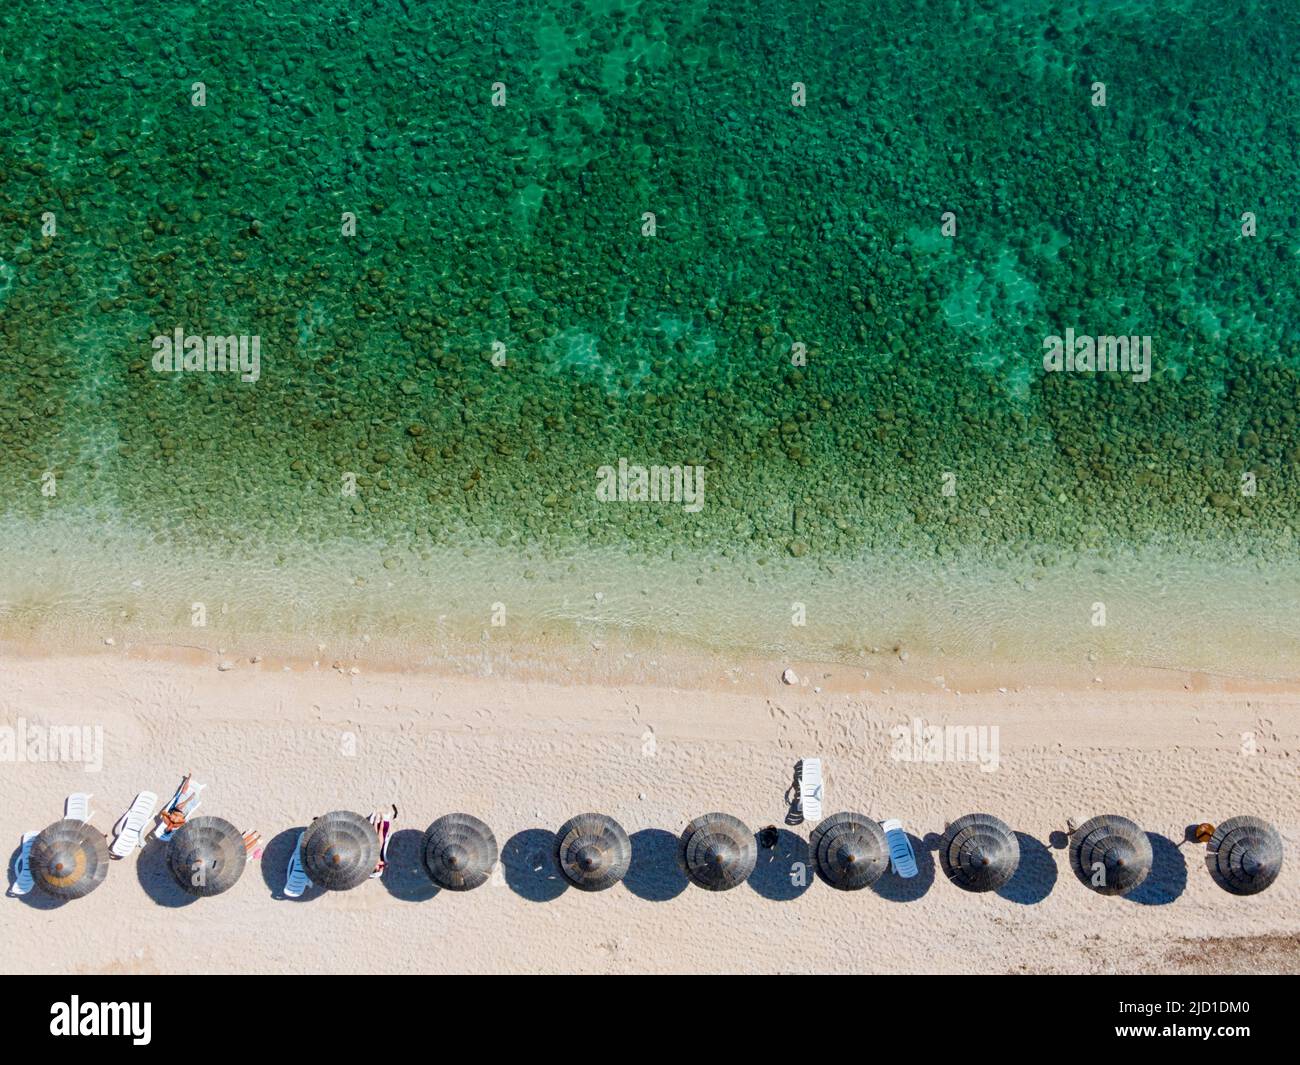 Colpo di drone, ombrelloni sulla spiaggia con mare turchese, Stara Baska, Stara Baska, Isola di Krk, Golfo del Quarnero, Primorje-Gorski kotar, Croazia Foto Stock